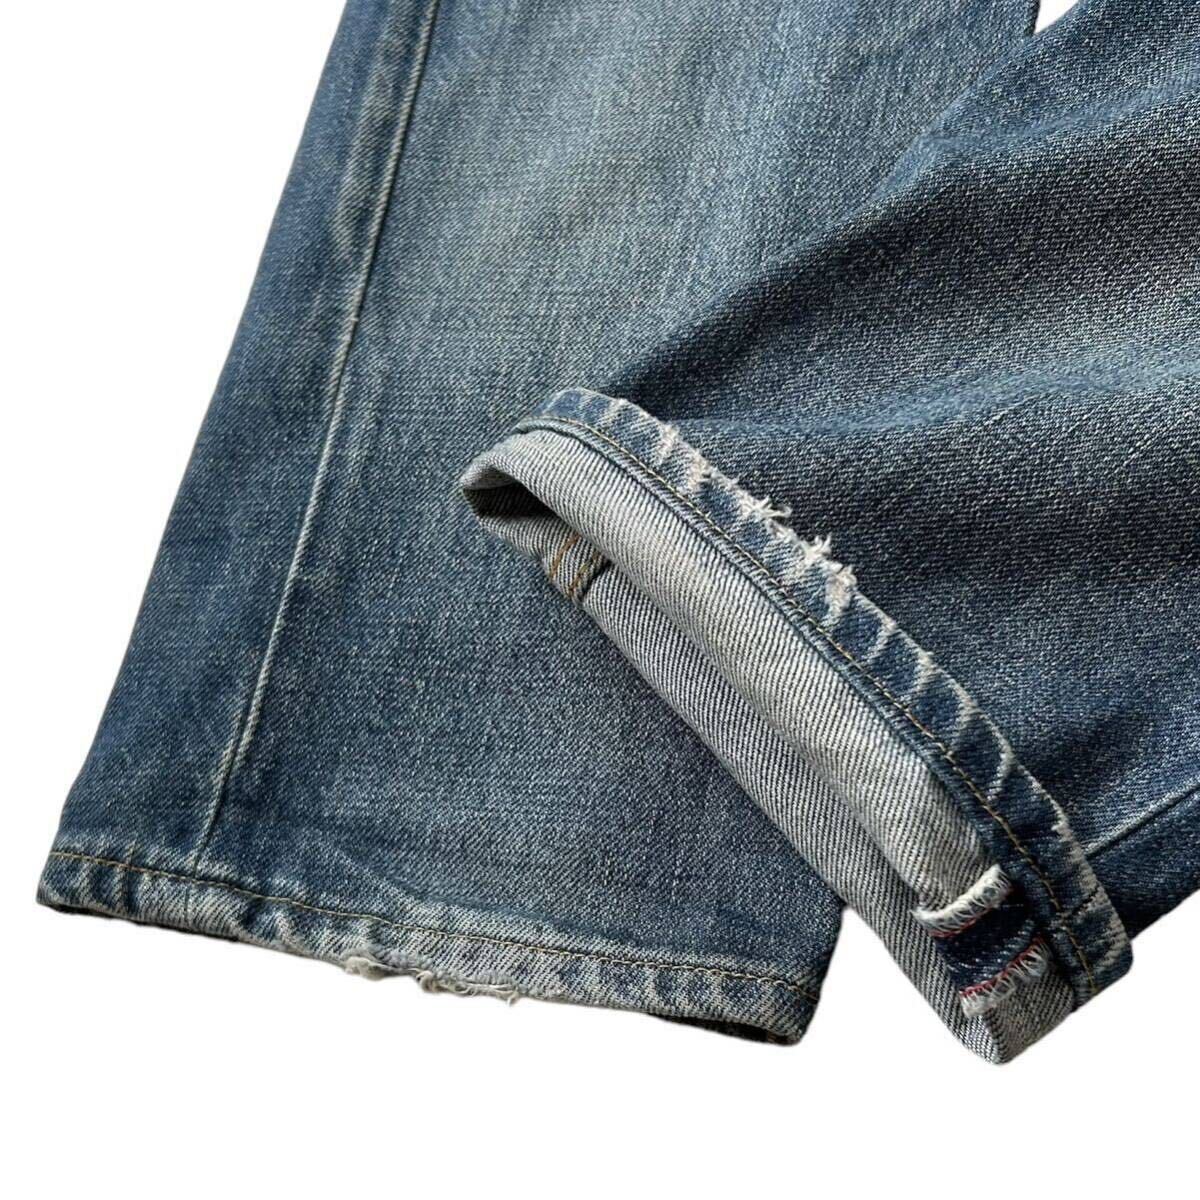 イタリア製 本人期 1998 Archive HELMUT LANG Denim Pants Jeans 28 ヘルムートラング 初期 デニム パンツ ジーンズ アーカイブ 90s rareの画像6